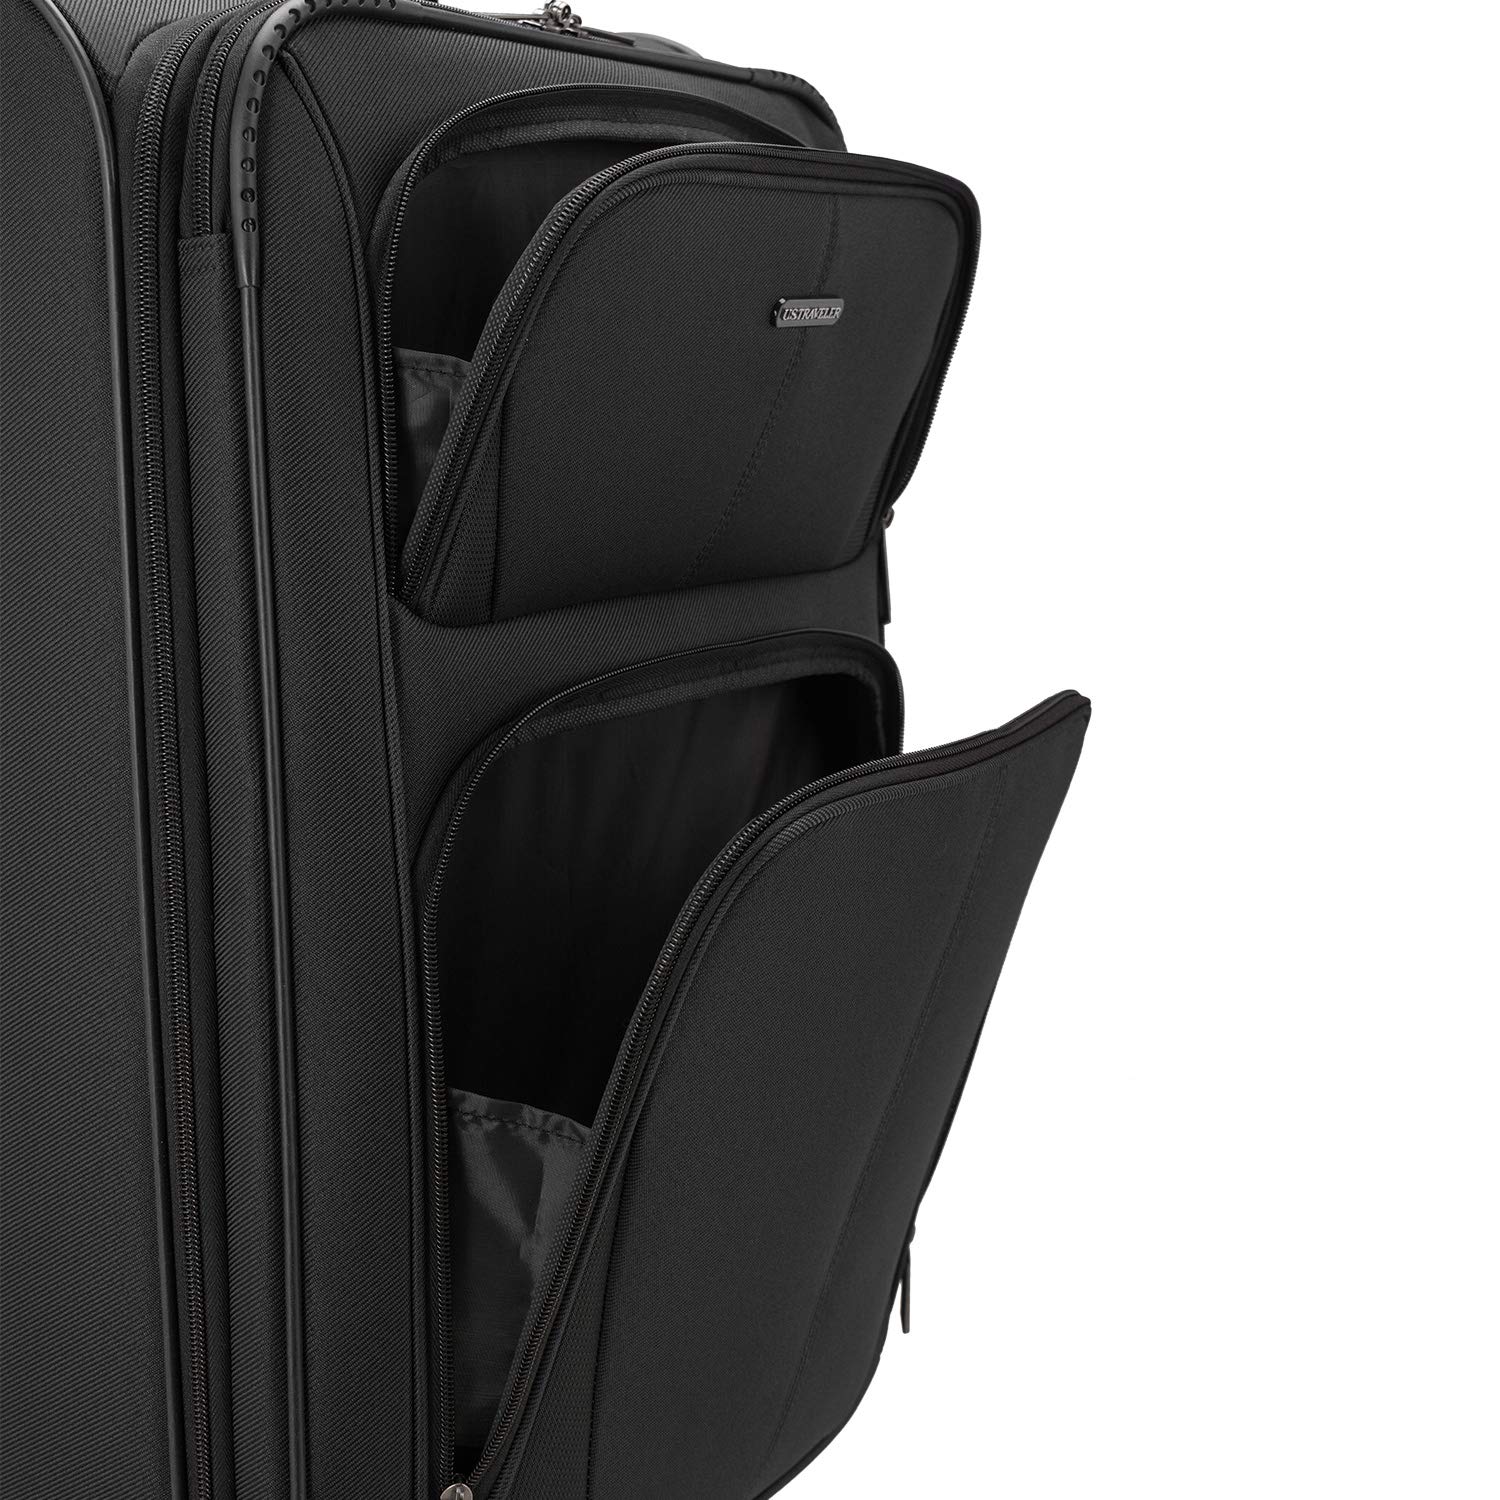 U.S. Traveler Aviron Bay Expandable Softside Spinner Wheels, Black, 2 Piece Luggage